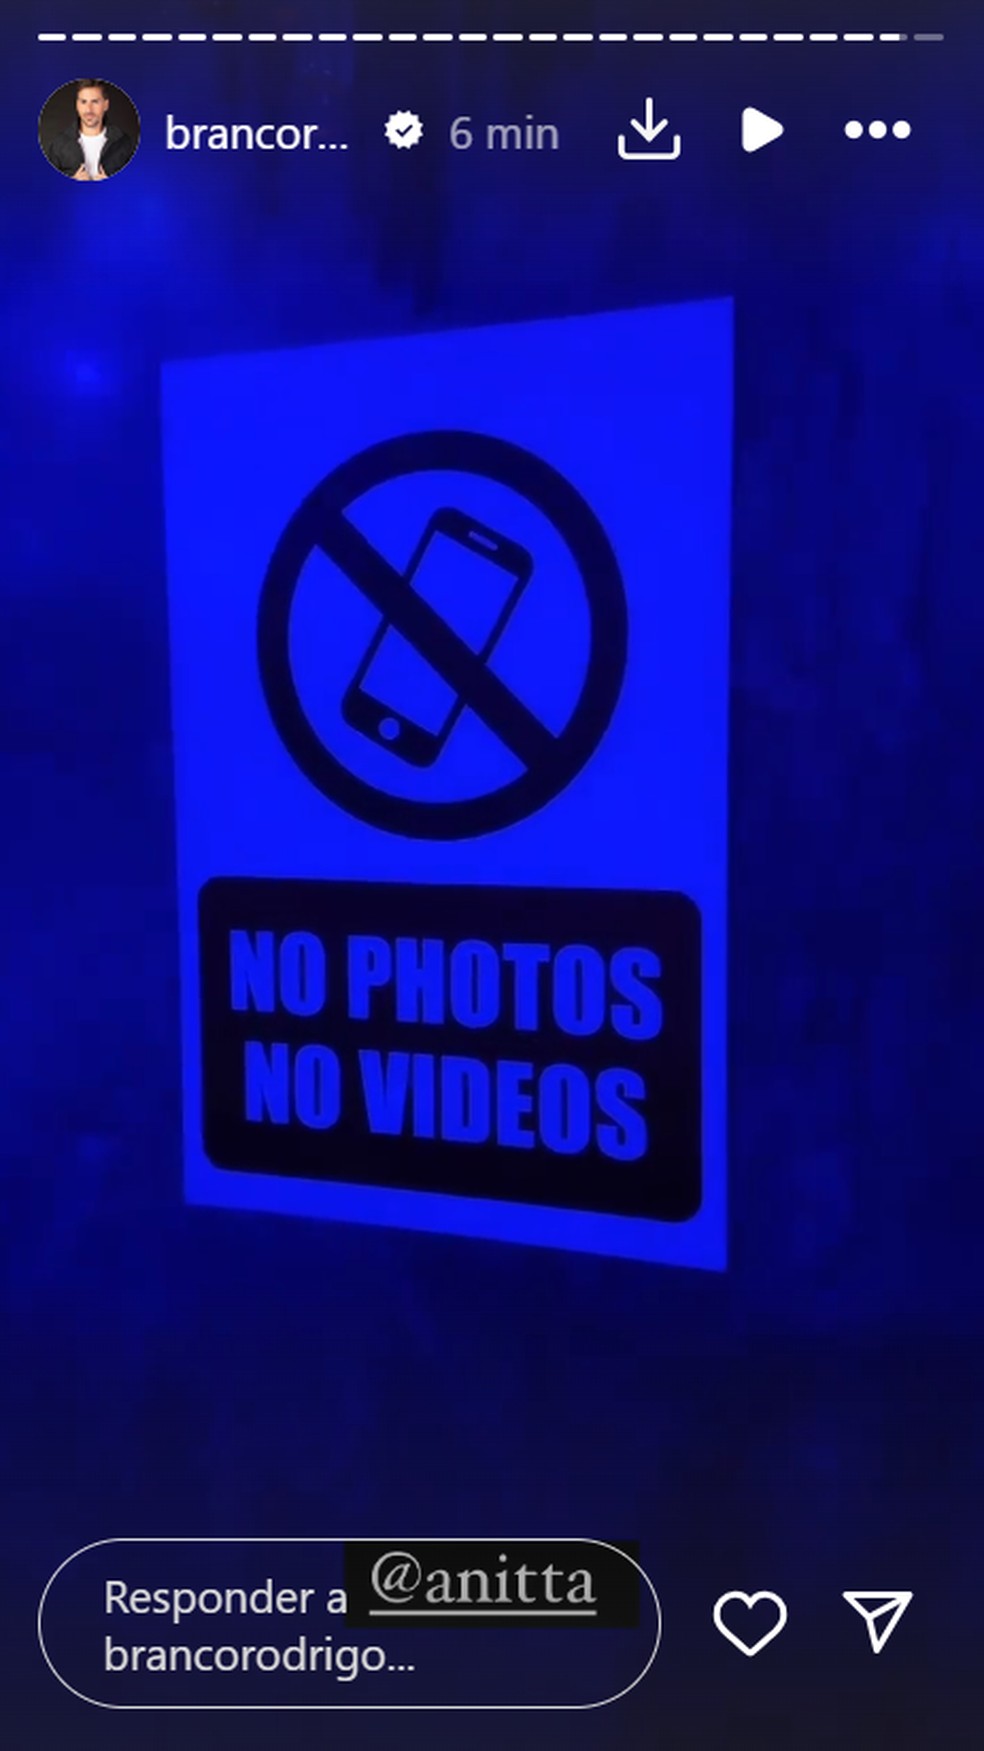 Festa de Anitta tem fotos e vídeos proibidos — Foto: Reprodução/Instagram